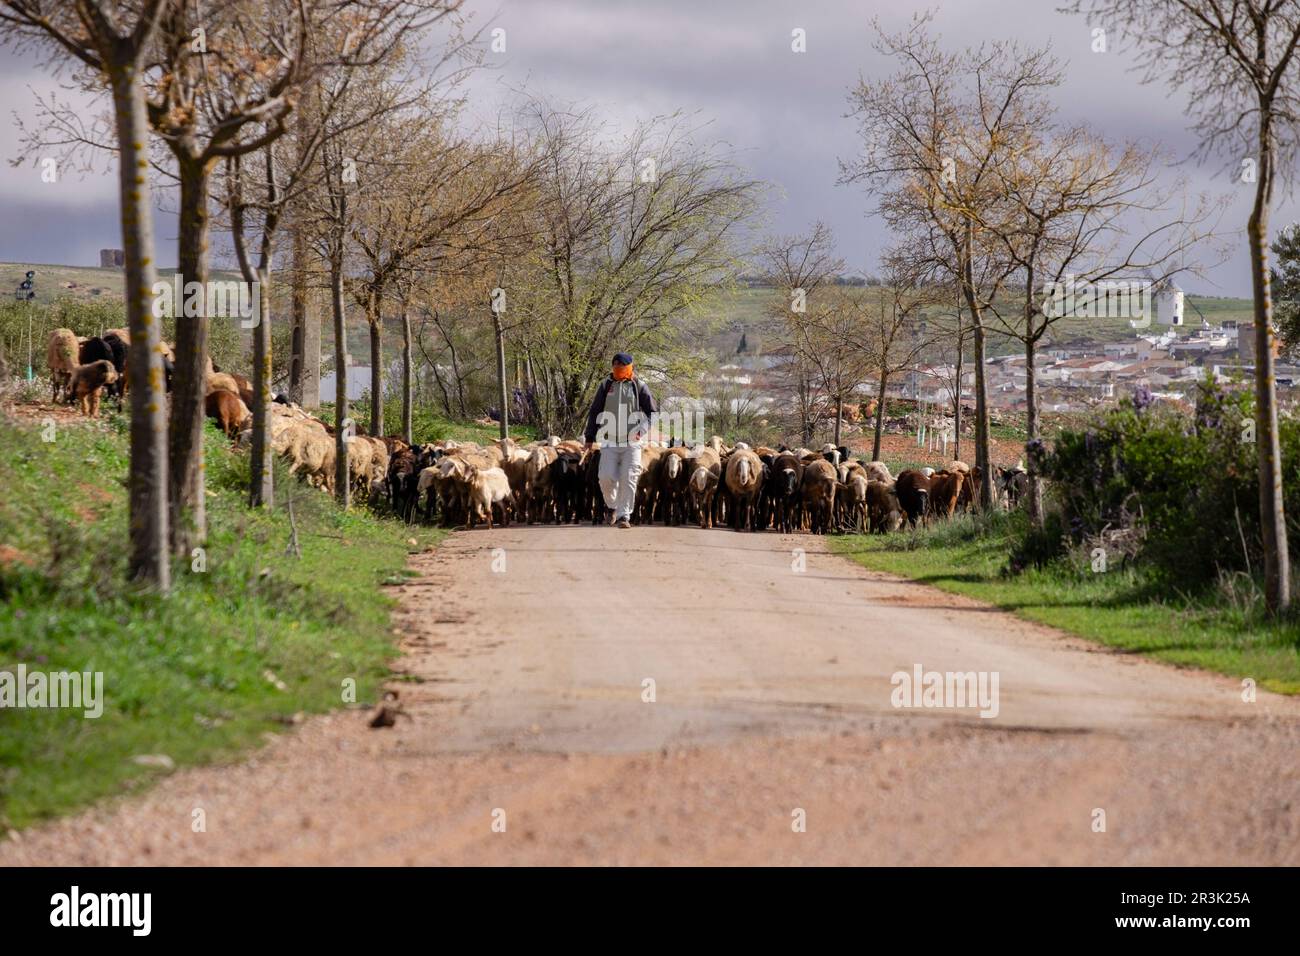 pastor con su rebaño, Campo de Criptana, provincia de Ciudad Real, Castilla-La Mancha, Spain. Stock Photo